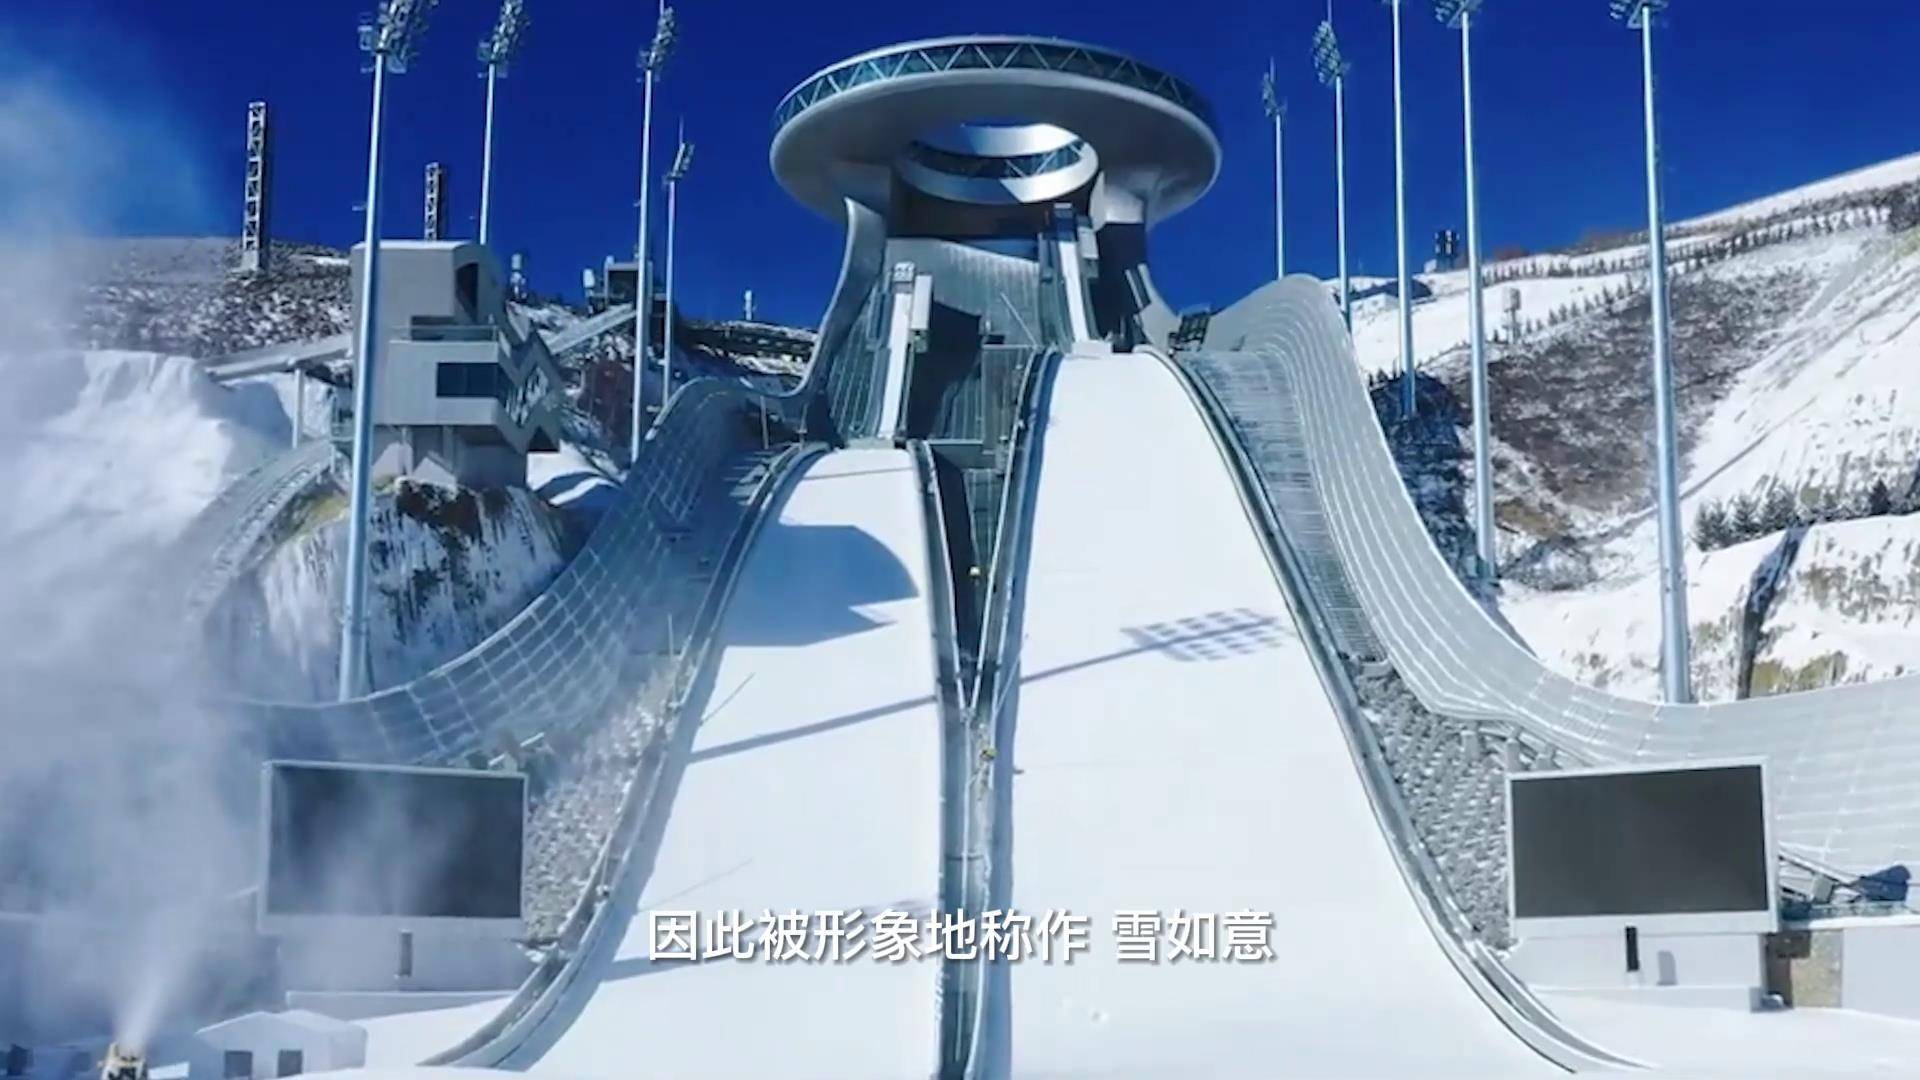 北京冬奥会雪如意场馆图片